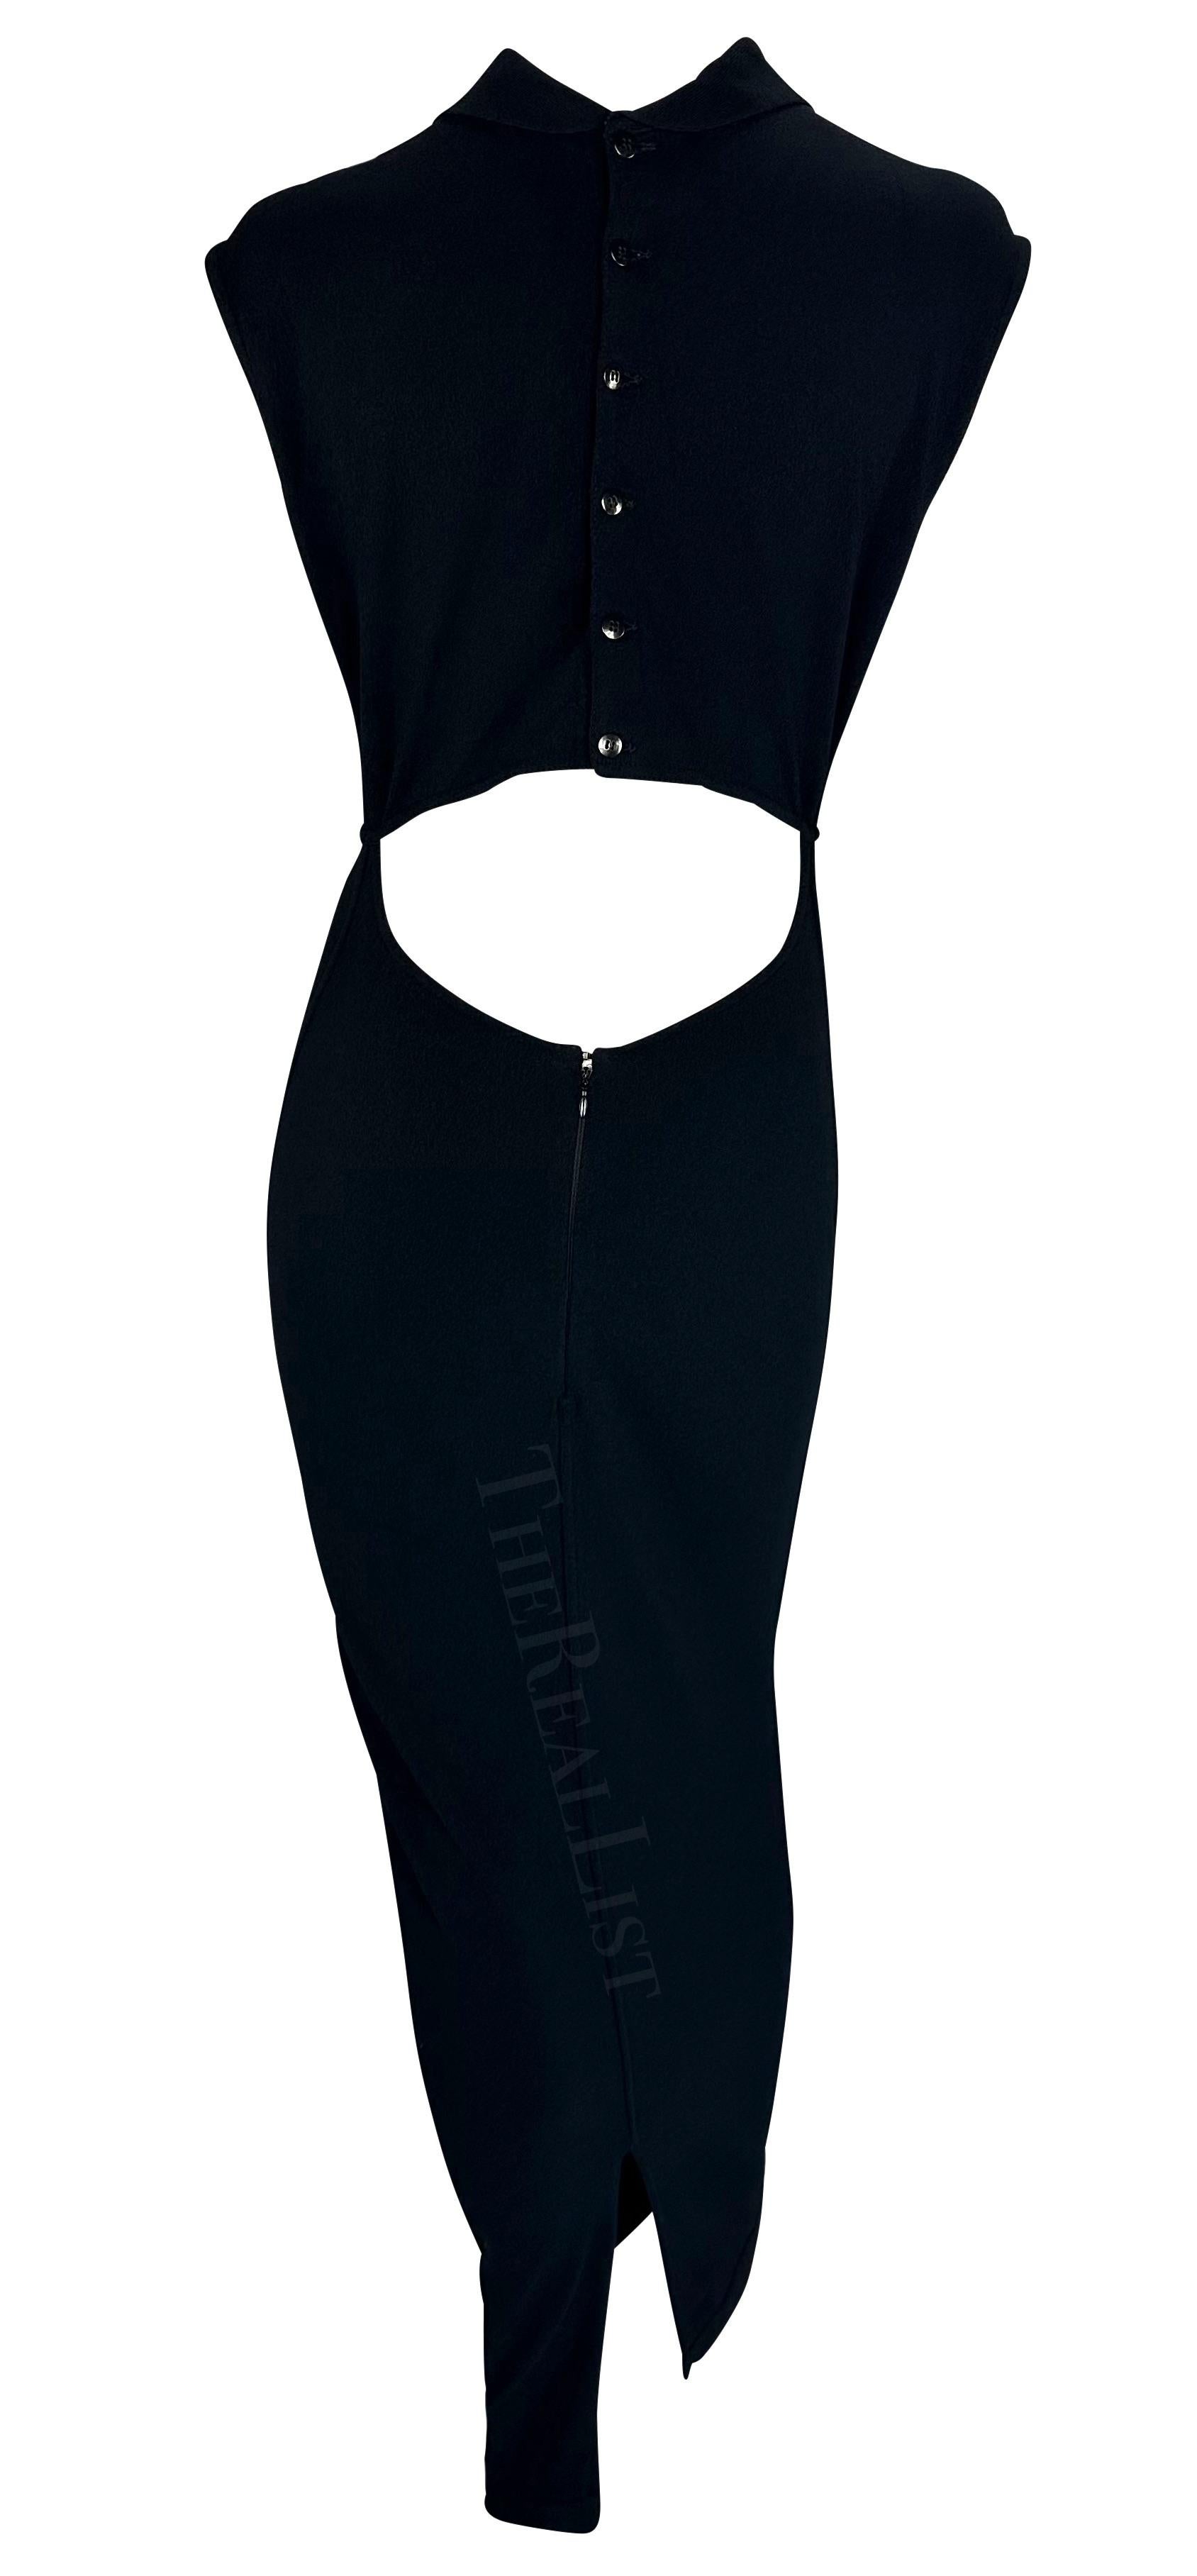 S/S 1989 Azzedine Alaïa Runway Black Cutout Collar Knit Bodycon Stretch Dress For Sale 1